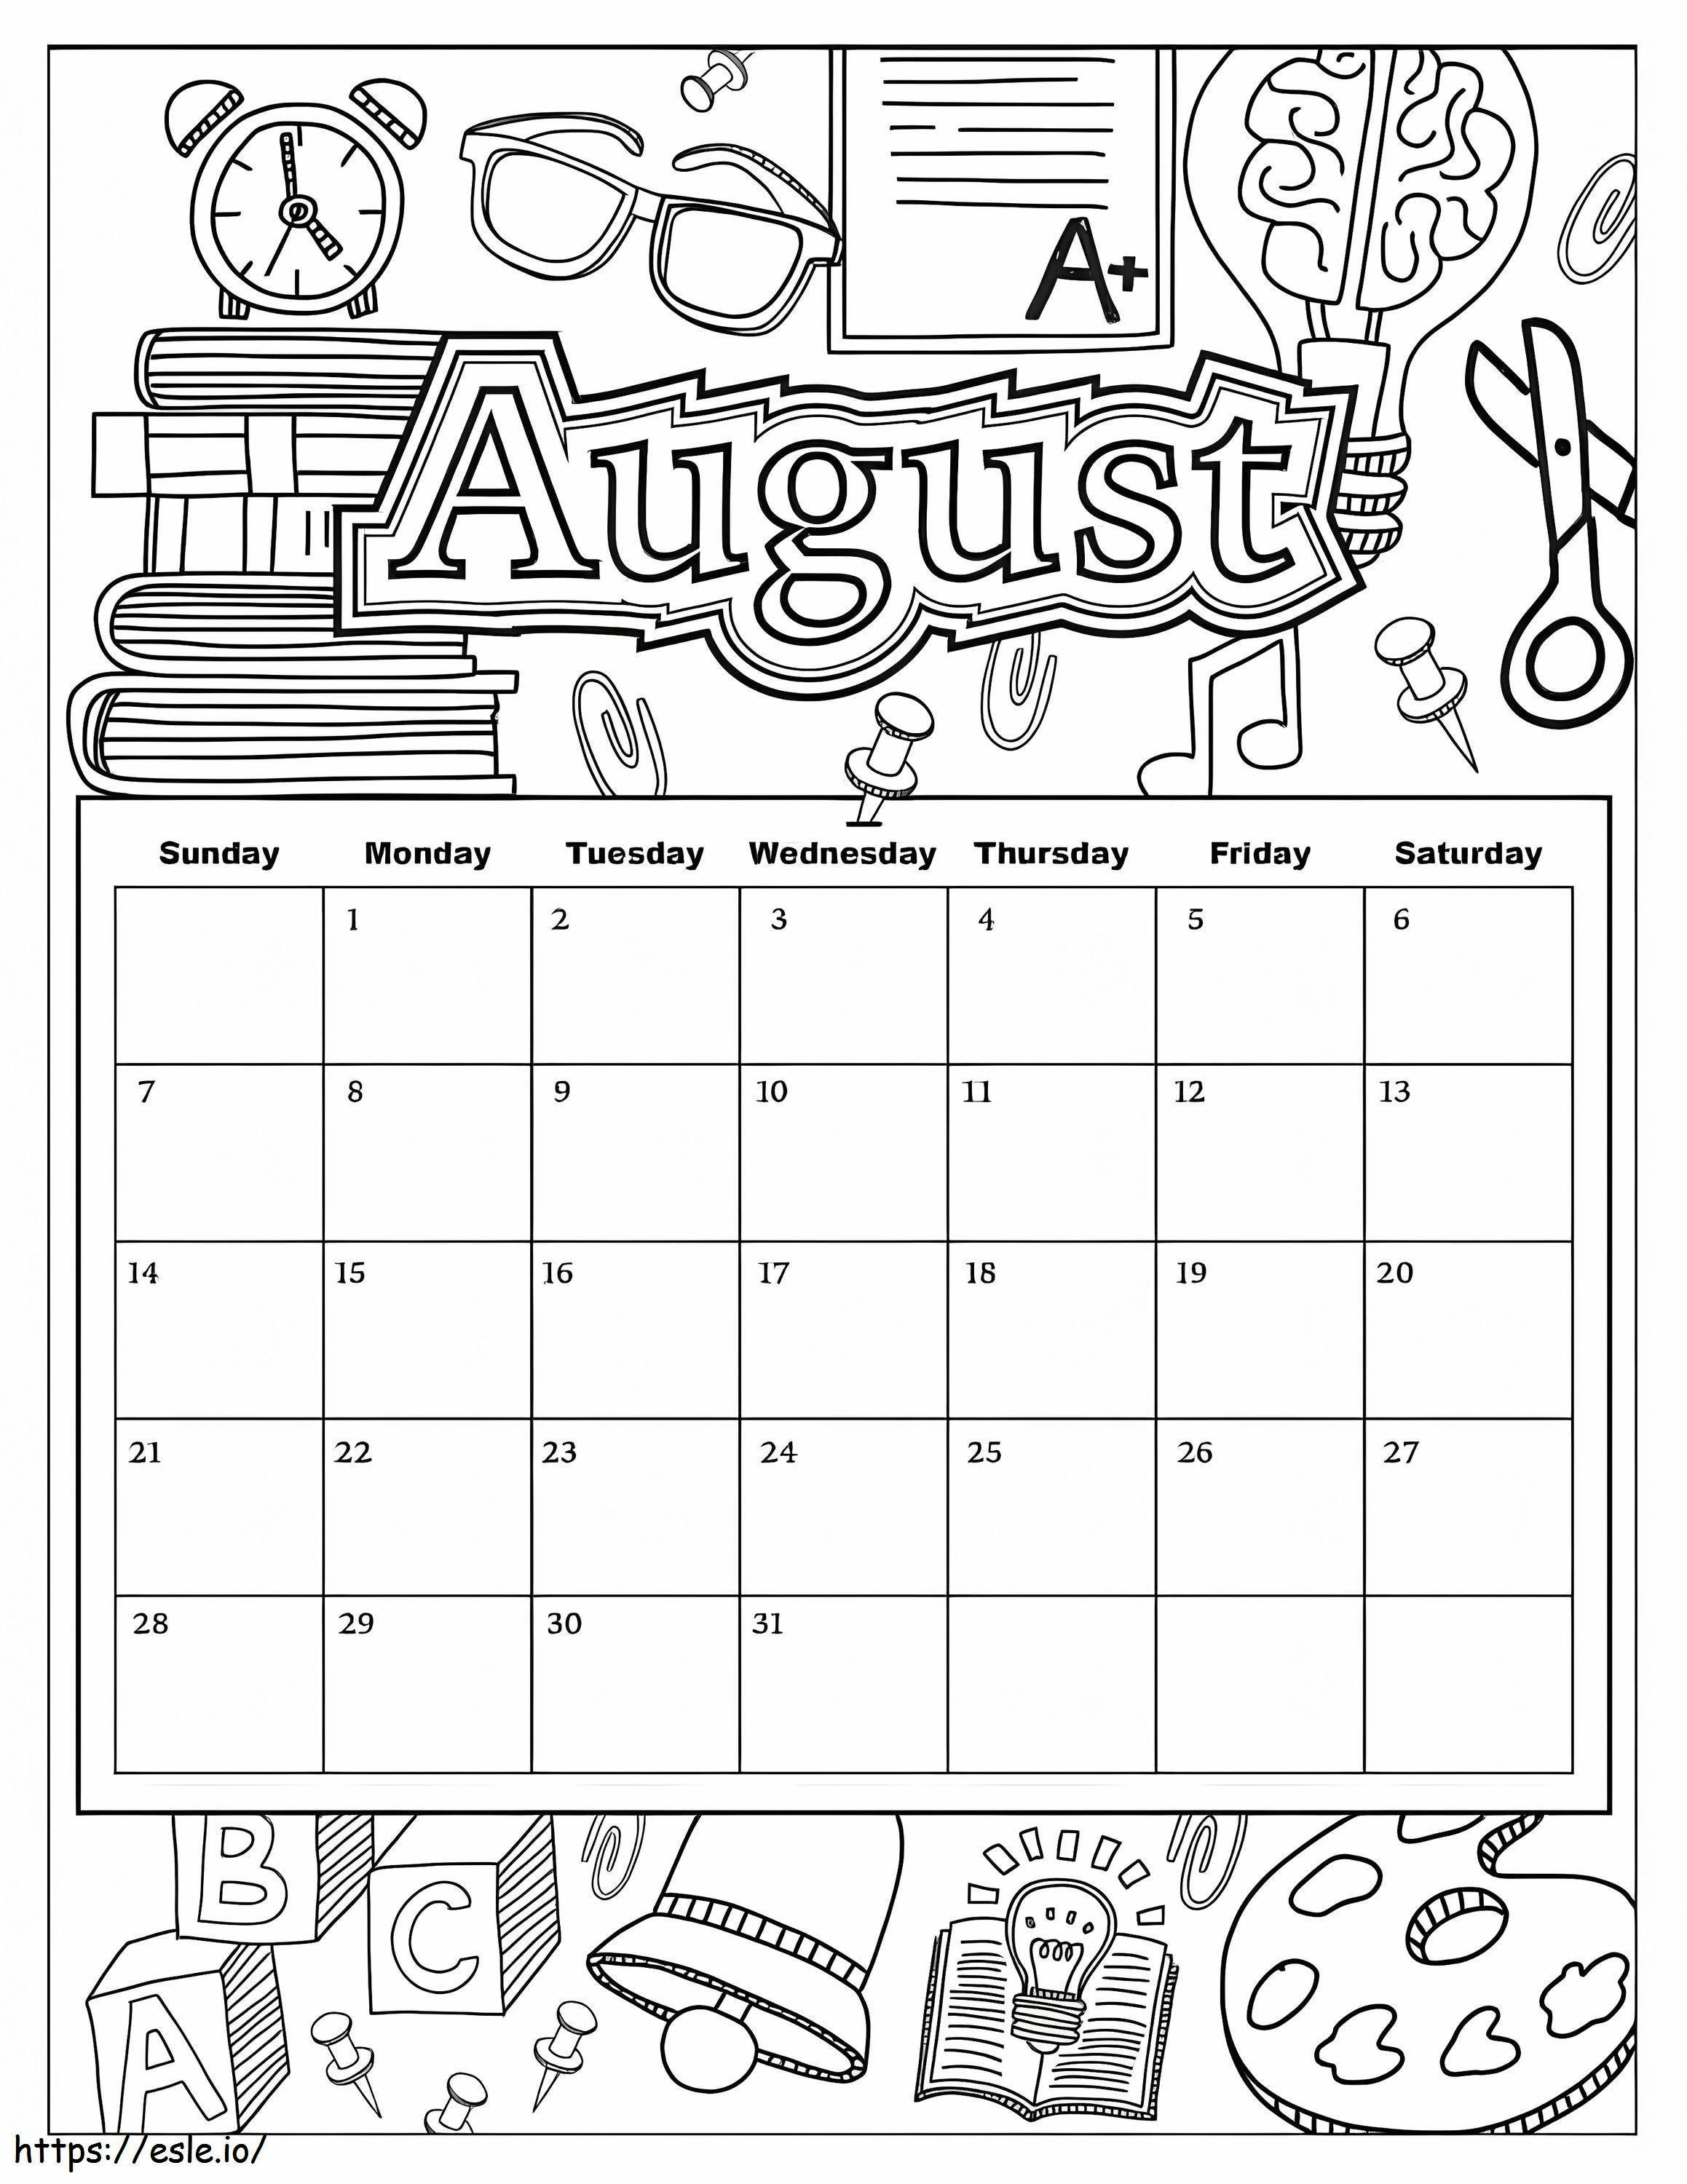 Augustus kalender kleurplaat kleurplaat